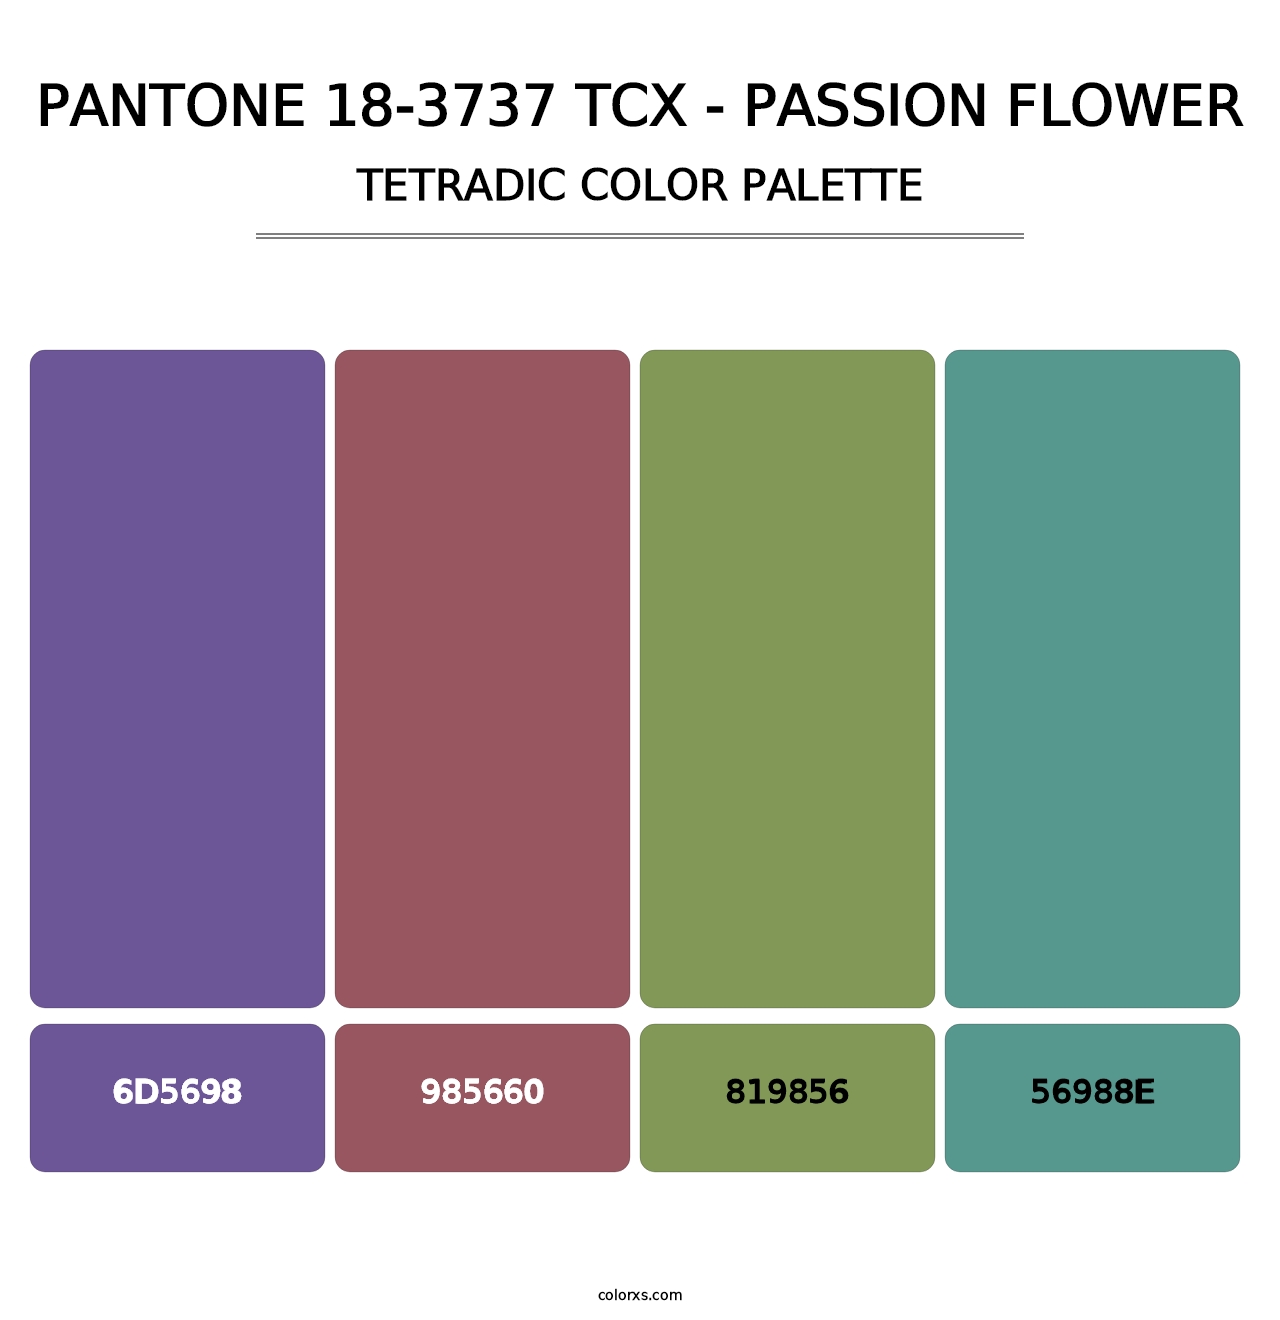 PANTONE 18-3737 TCX - Passion Flower - Tetradic Color Palette